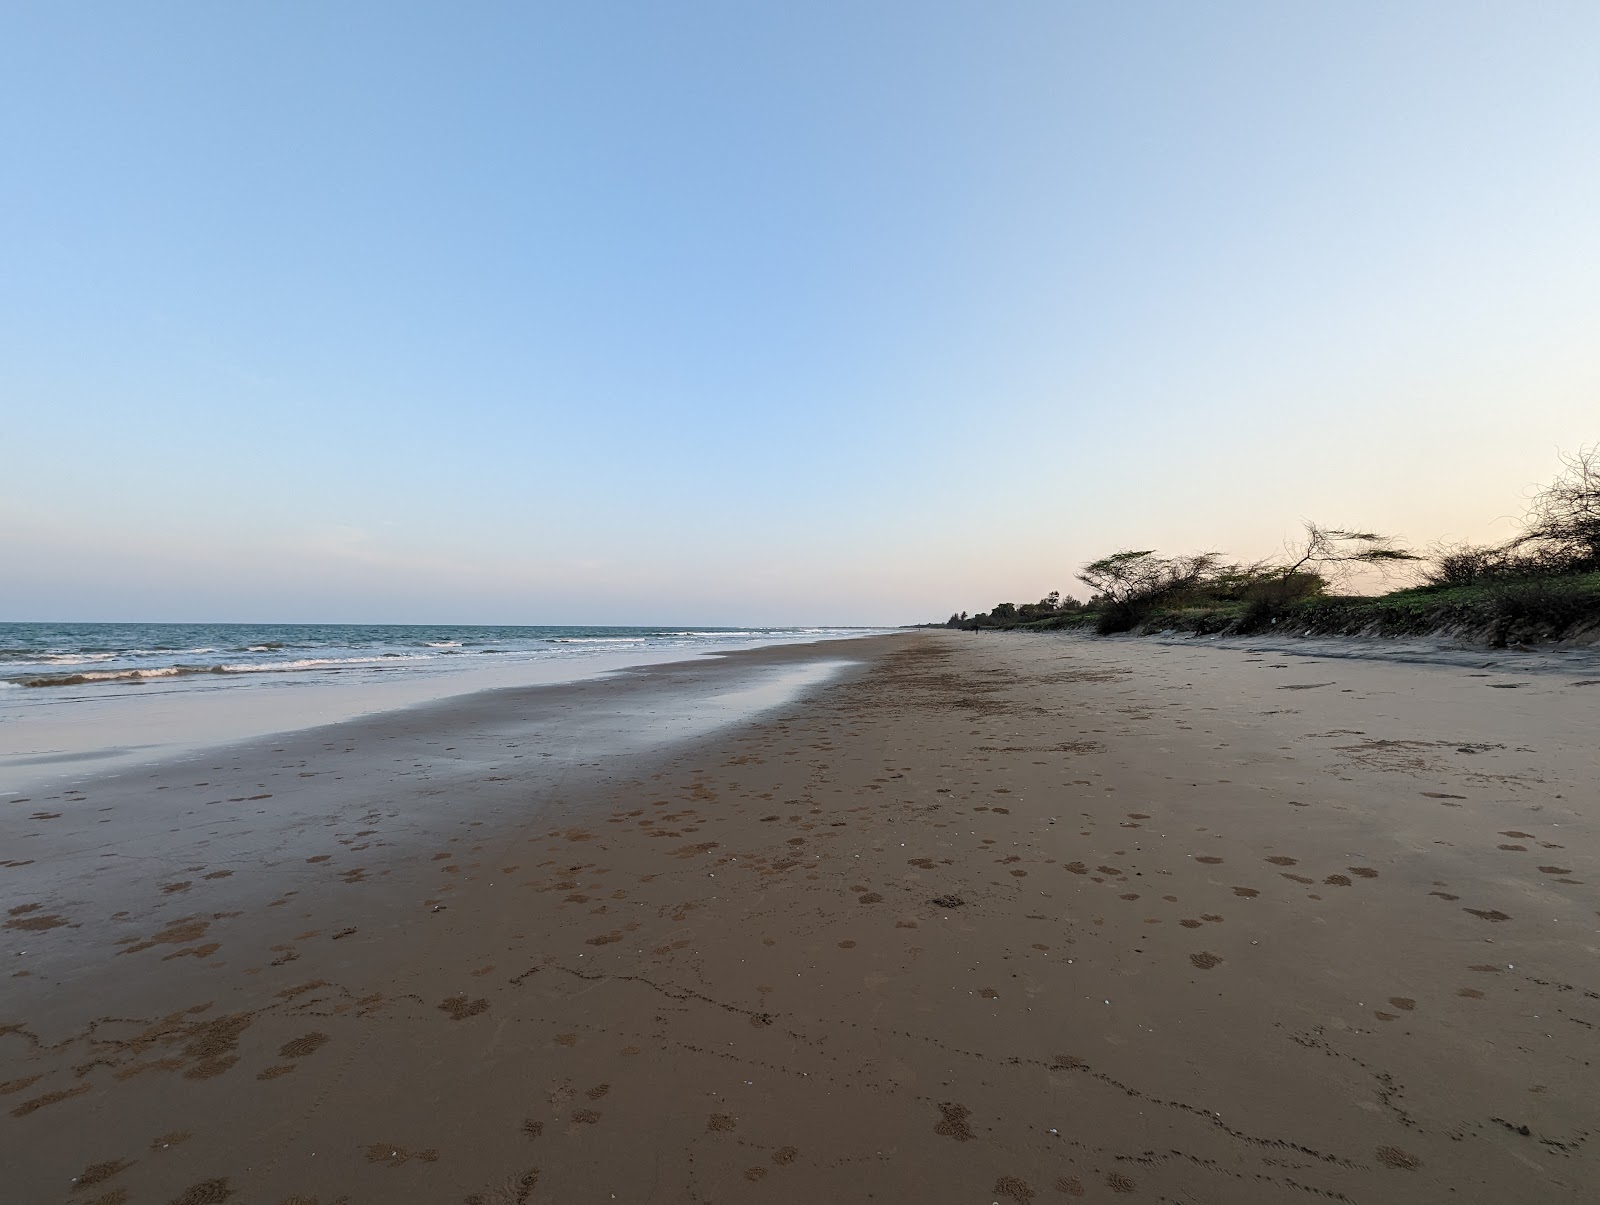 Zdjęcie Kanuparthi Beach z powierzchnią jasny piasek